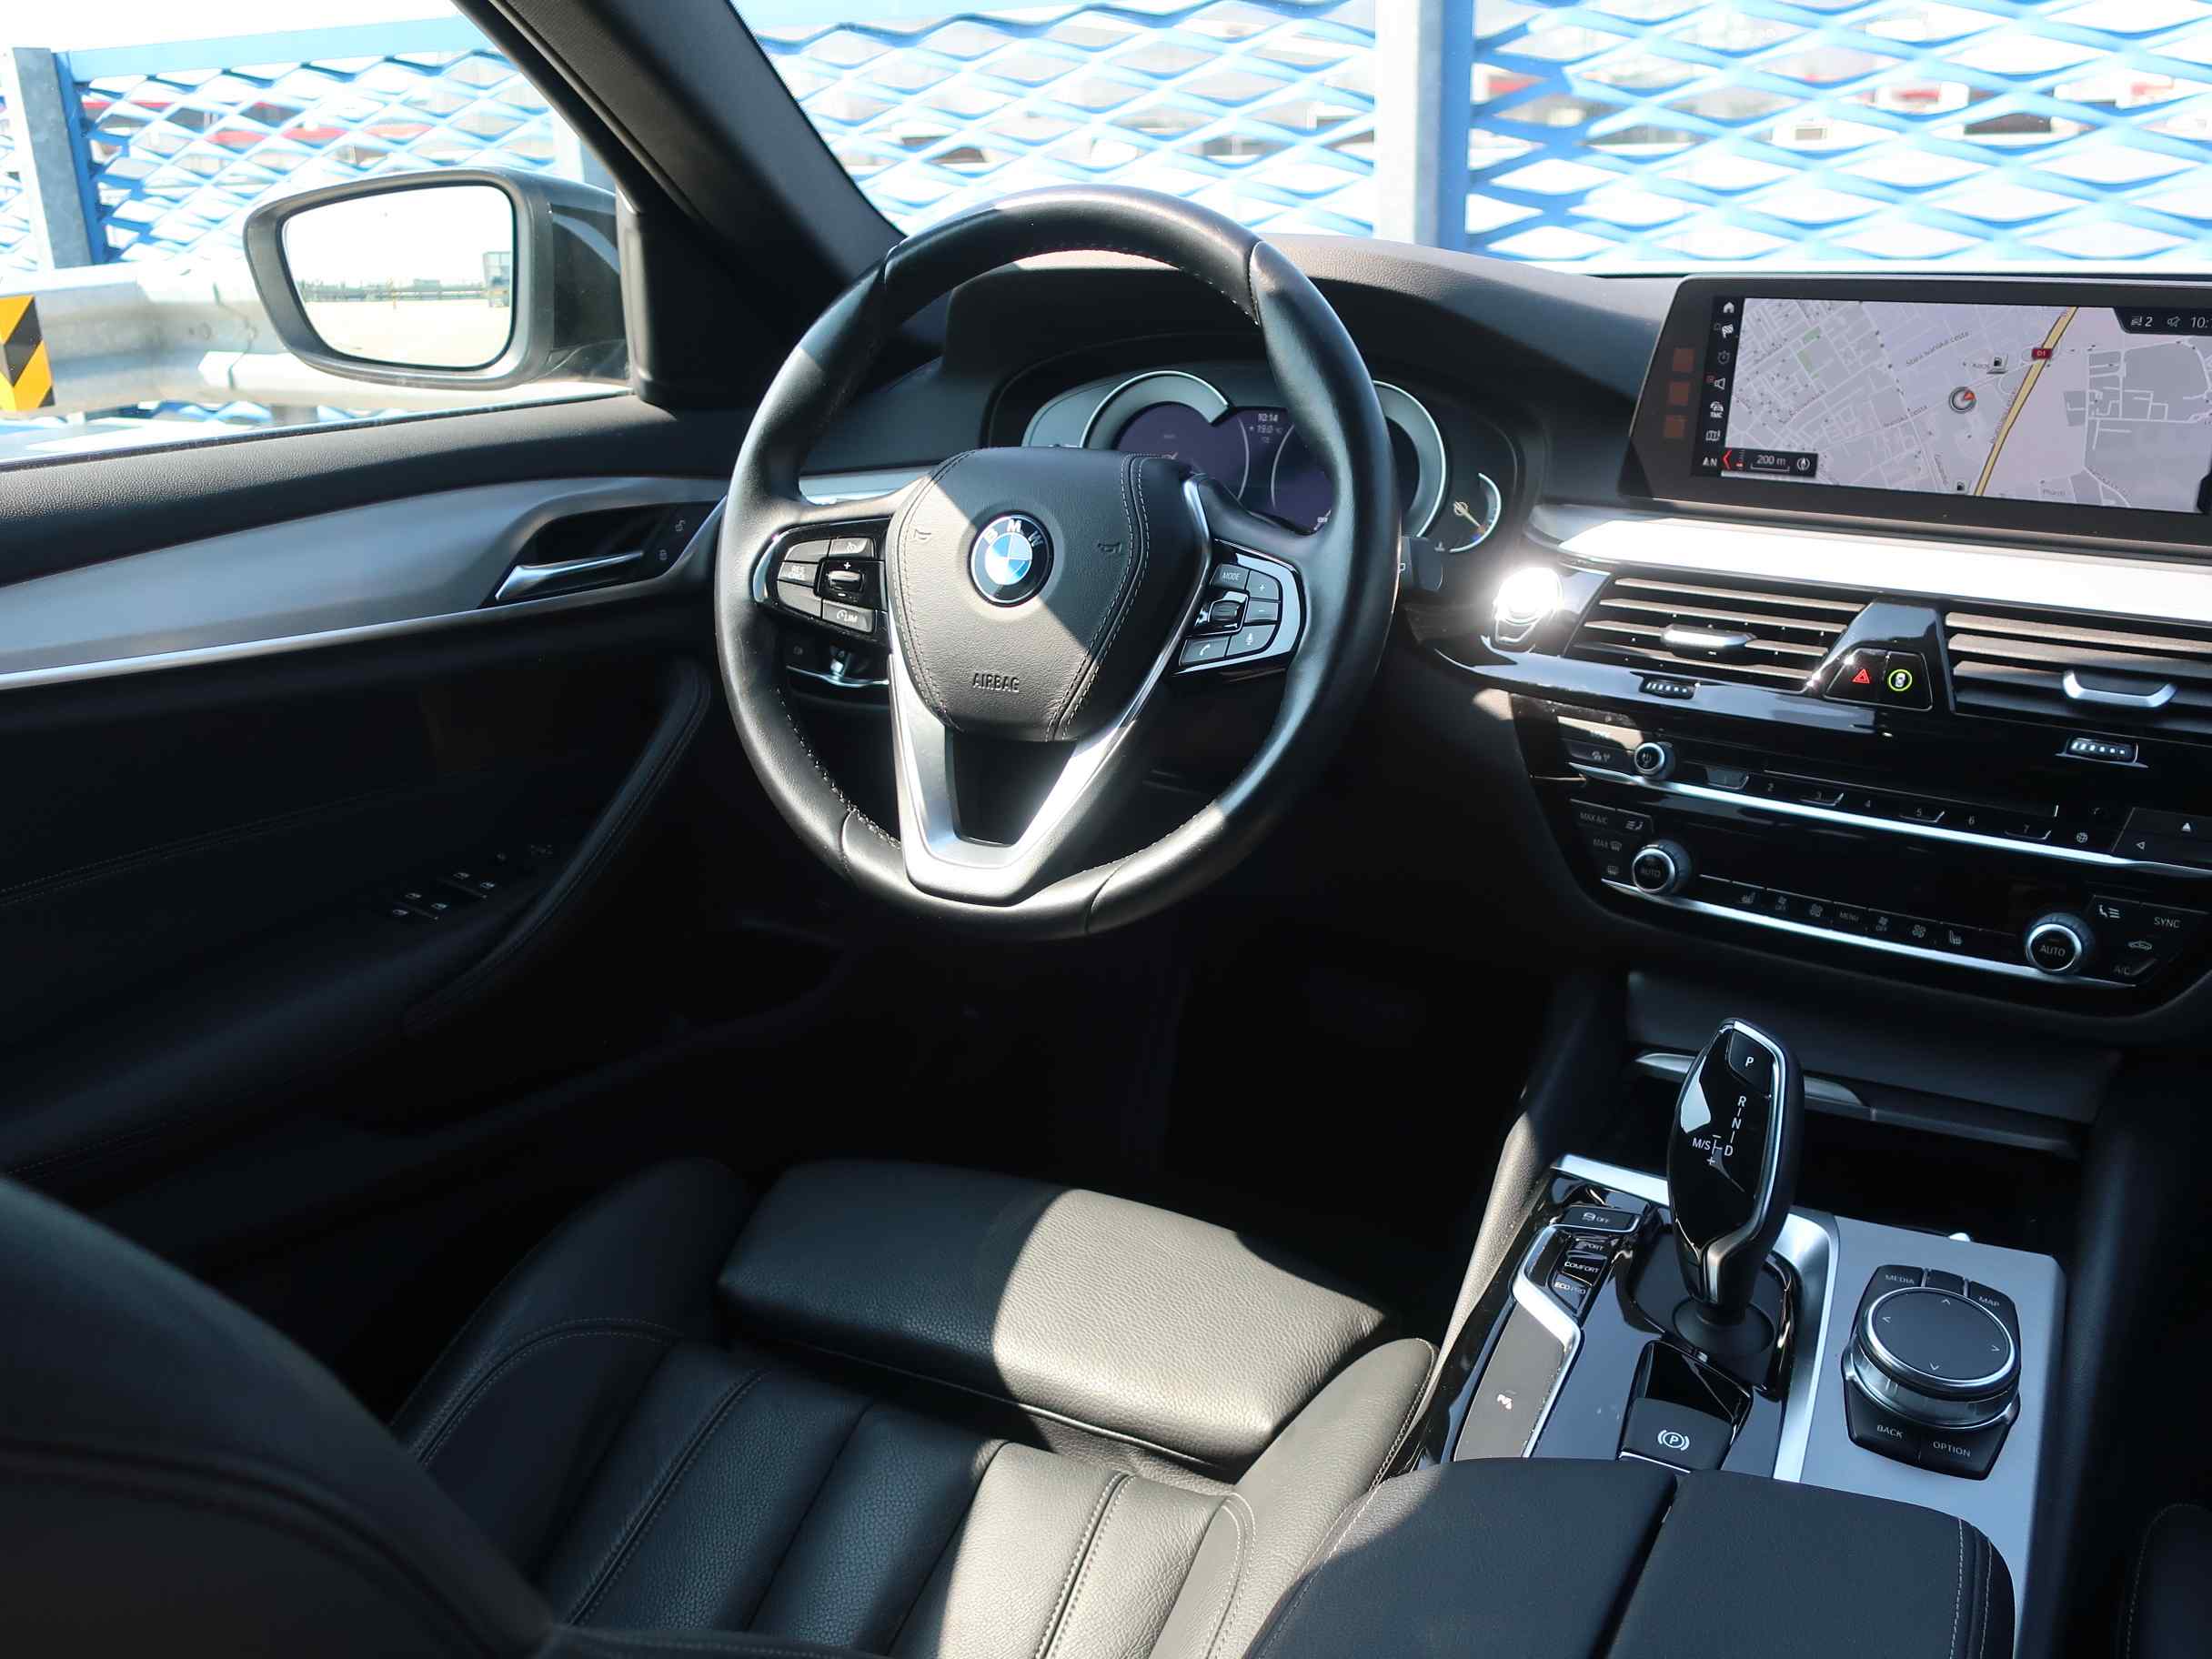 BMW 520d xDrive Touring